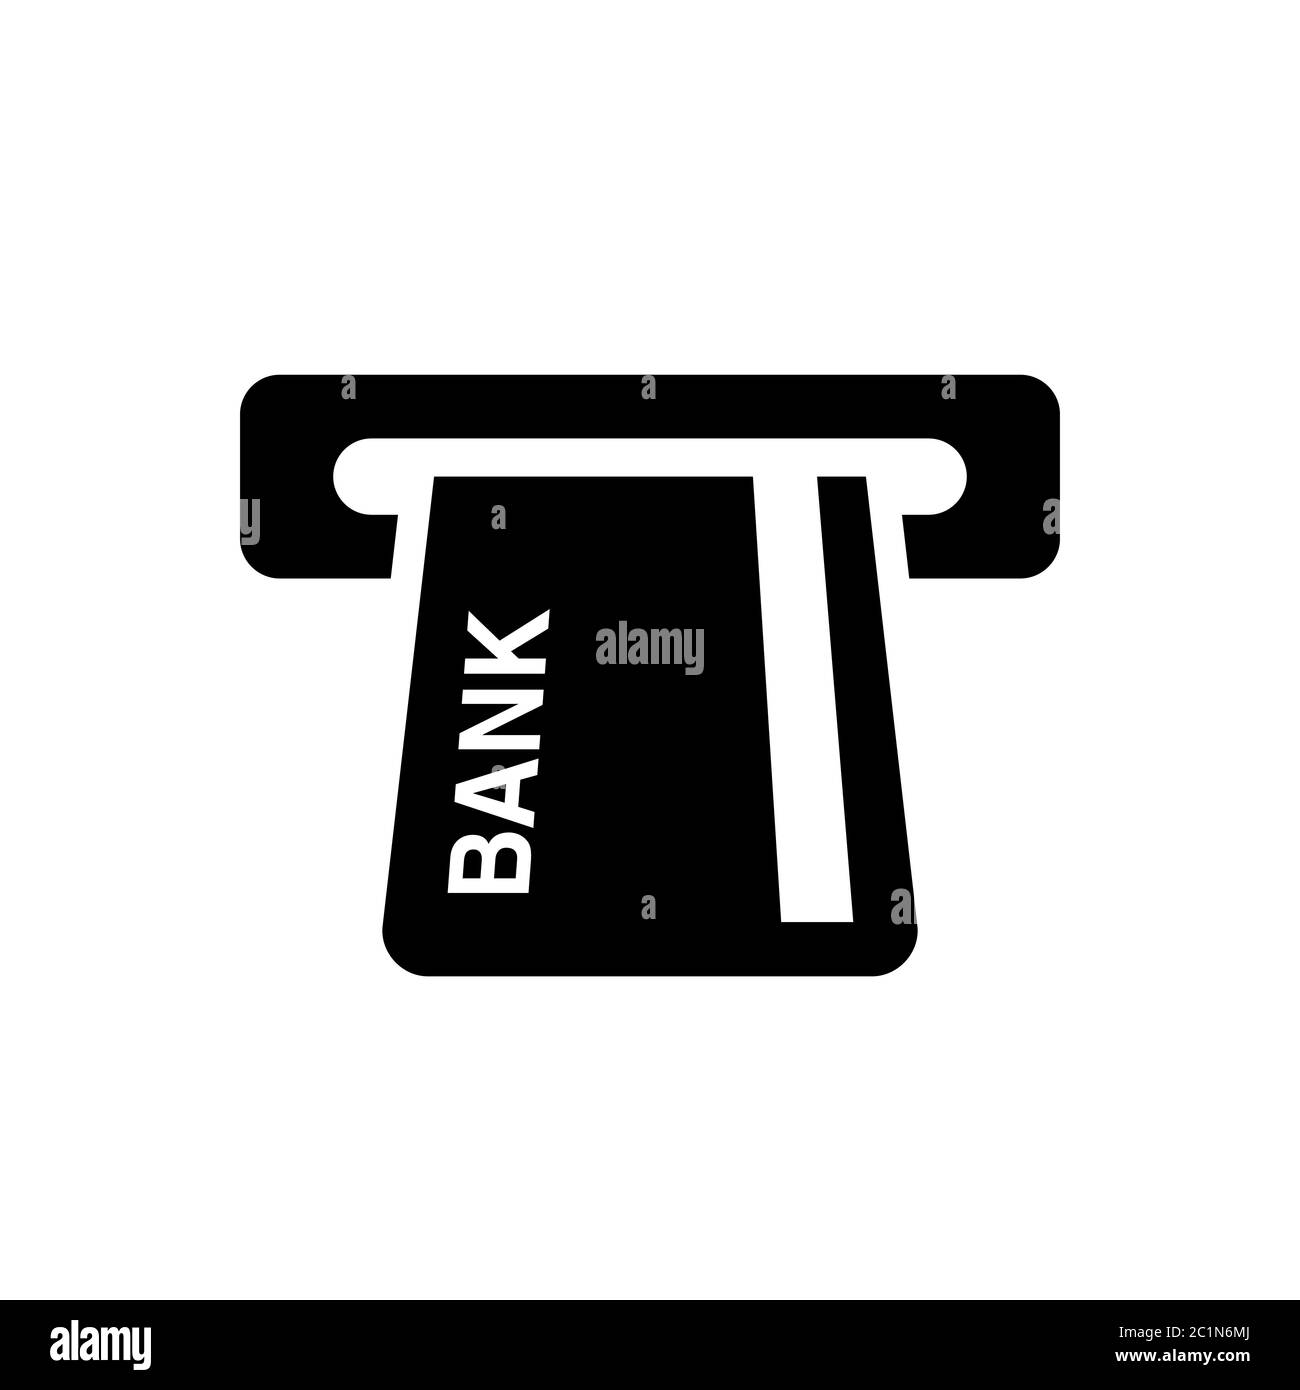 Simboli icona di bancomat con carte di credito. Elemento del dispositivo di tecnologia bancaria. Carta di credito caricata nello sportello bancomat. Illustrazione Vettoriale